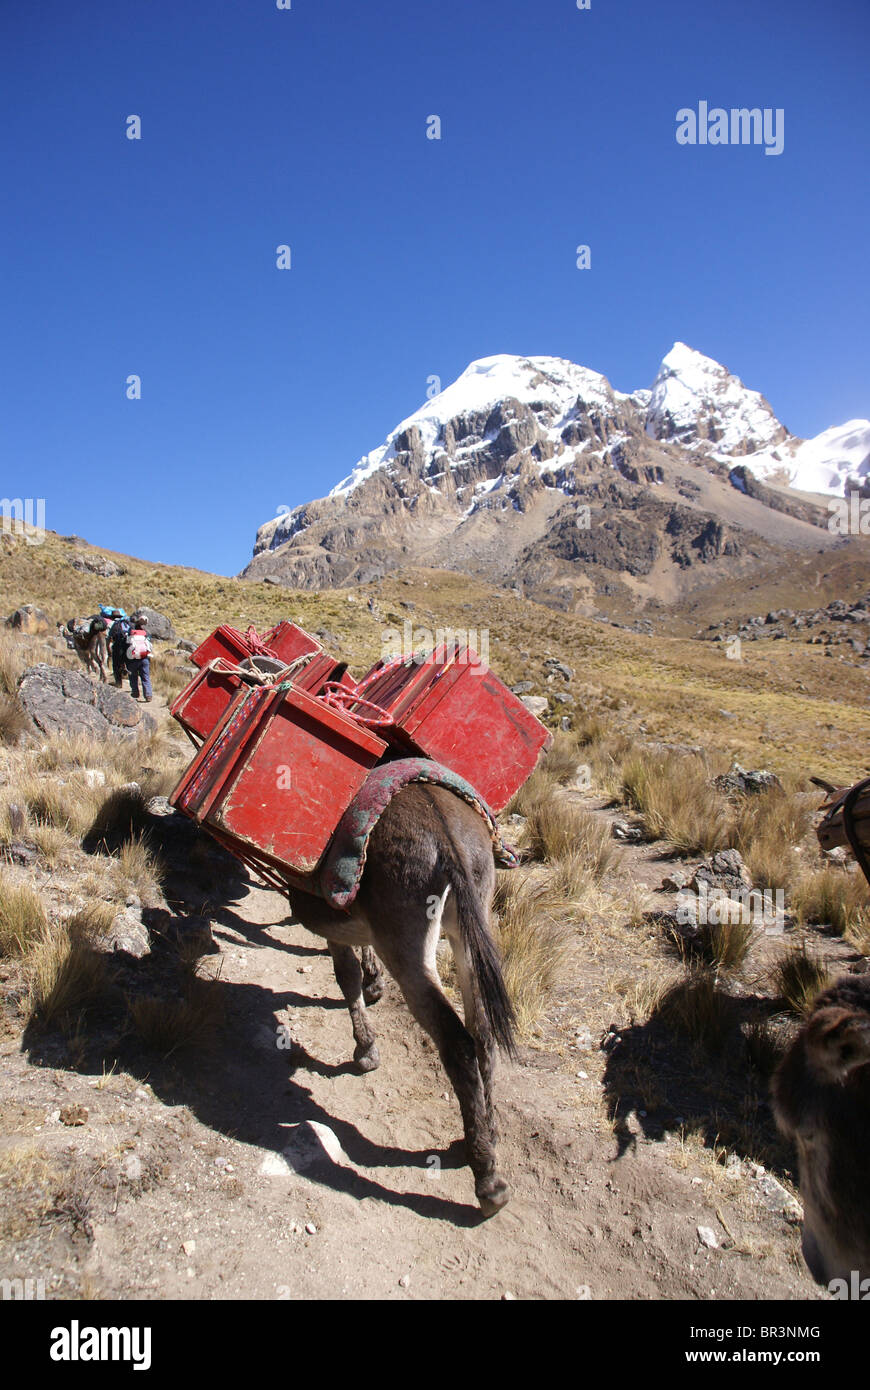 Maultier zu trainieren, tragen von Lasten, mit Cuyoc Berg im Hintergrund, Cordillera Huayhuash, Anden, Peru, Südamerika Stockfoto